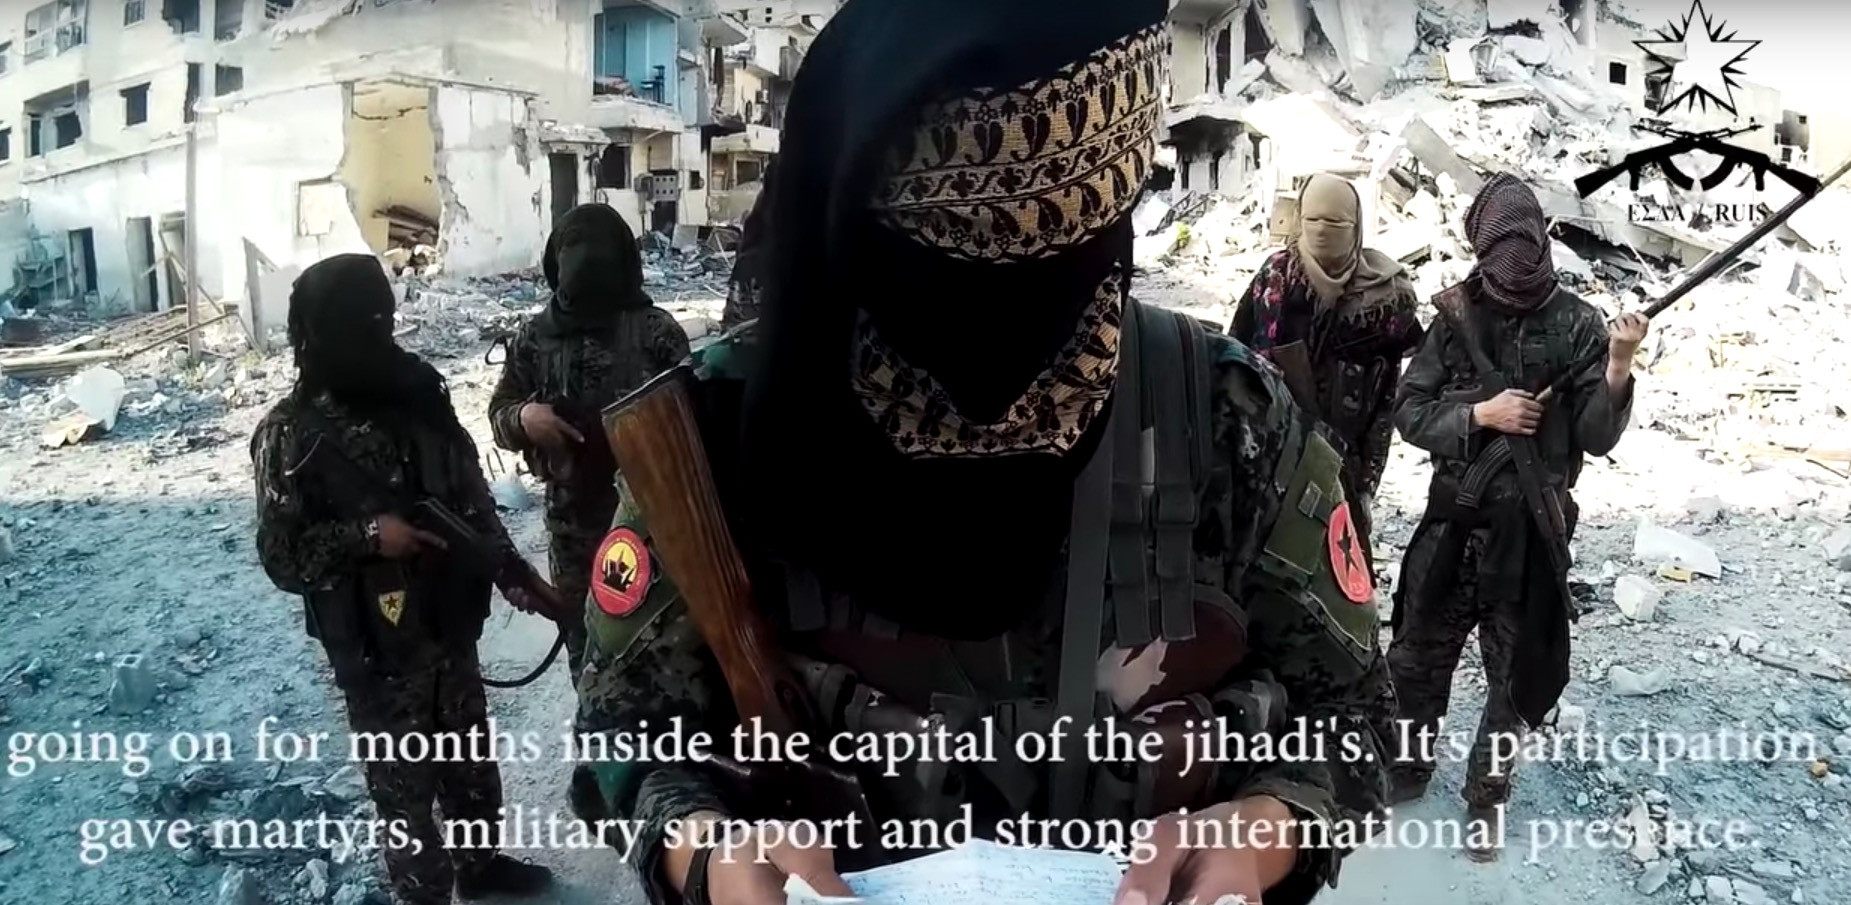 Έλληνες αναρχικοί που πολεμούν στη Ράκα της Συρίας στέλνουν μήνυμα στους τζιχαντιστές [Βίντεο]